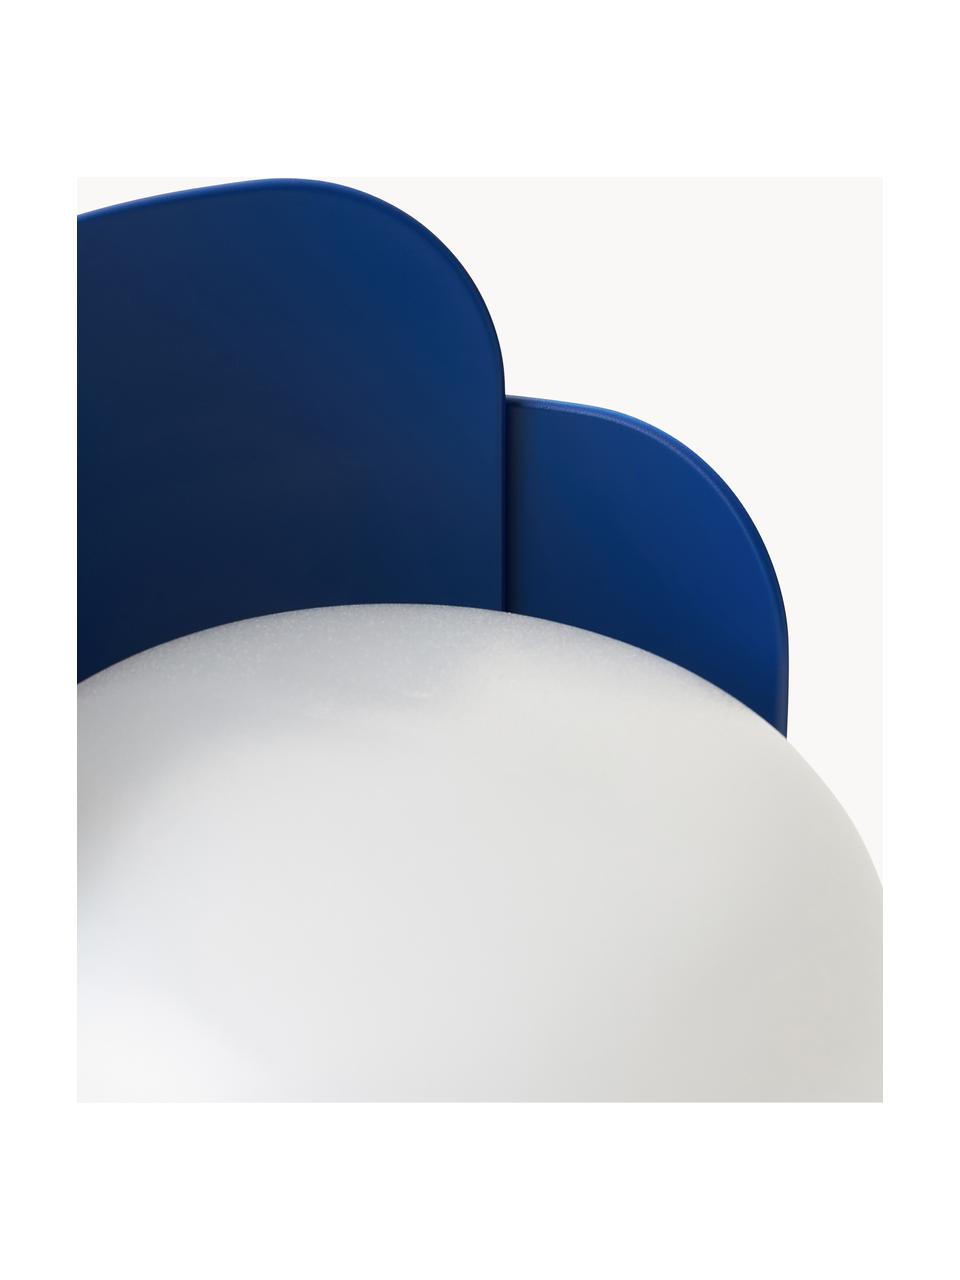 Petite lampe à poser artisanale Blom, Blanc, bleu foncé, Ø 15 x haut. 24 cm